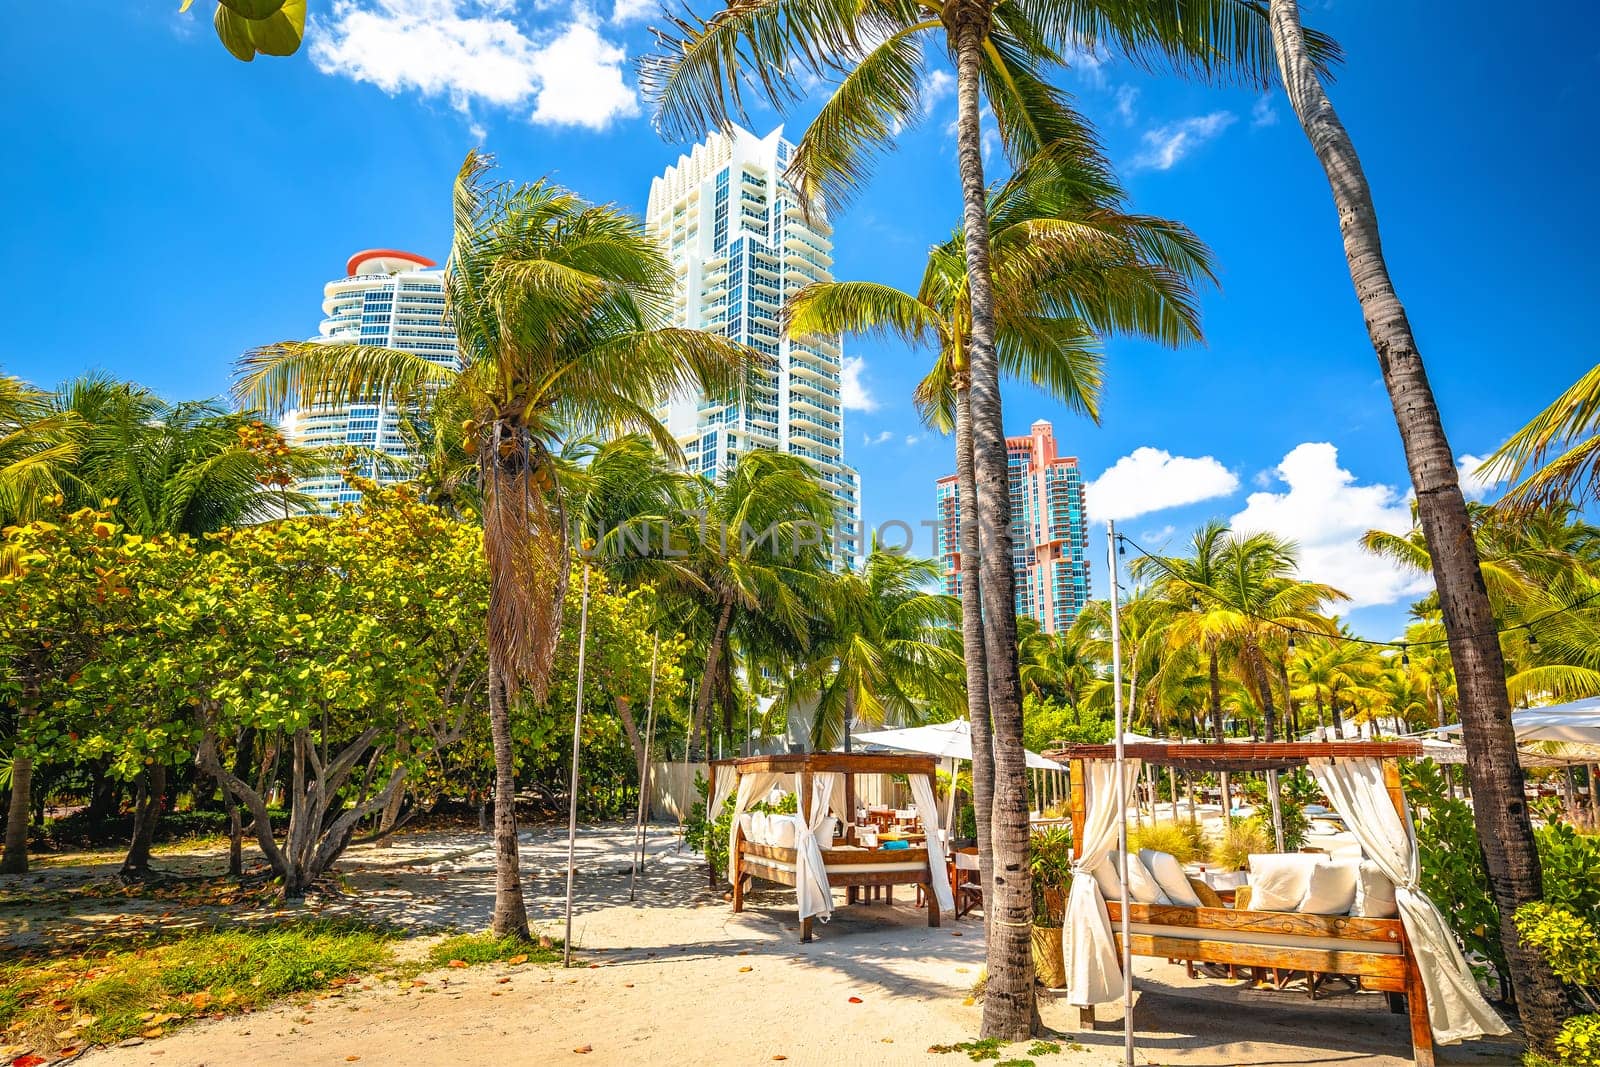 Miami South Beach park view, Florida  by xbrchx